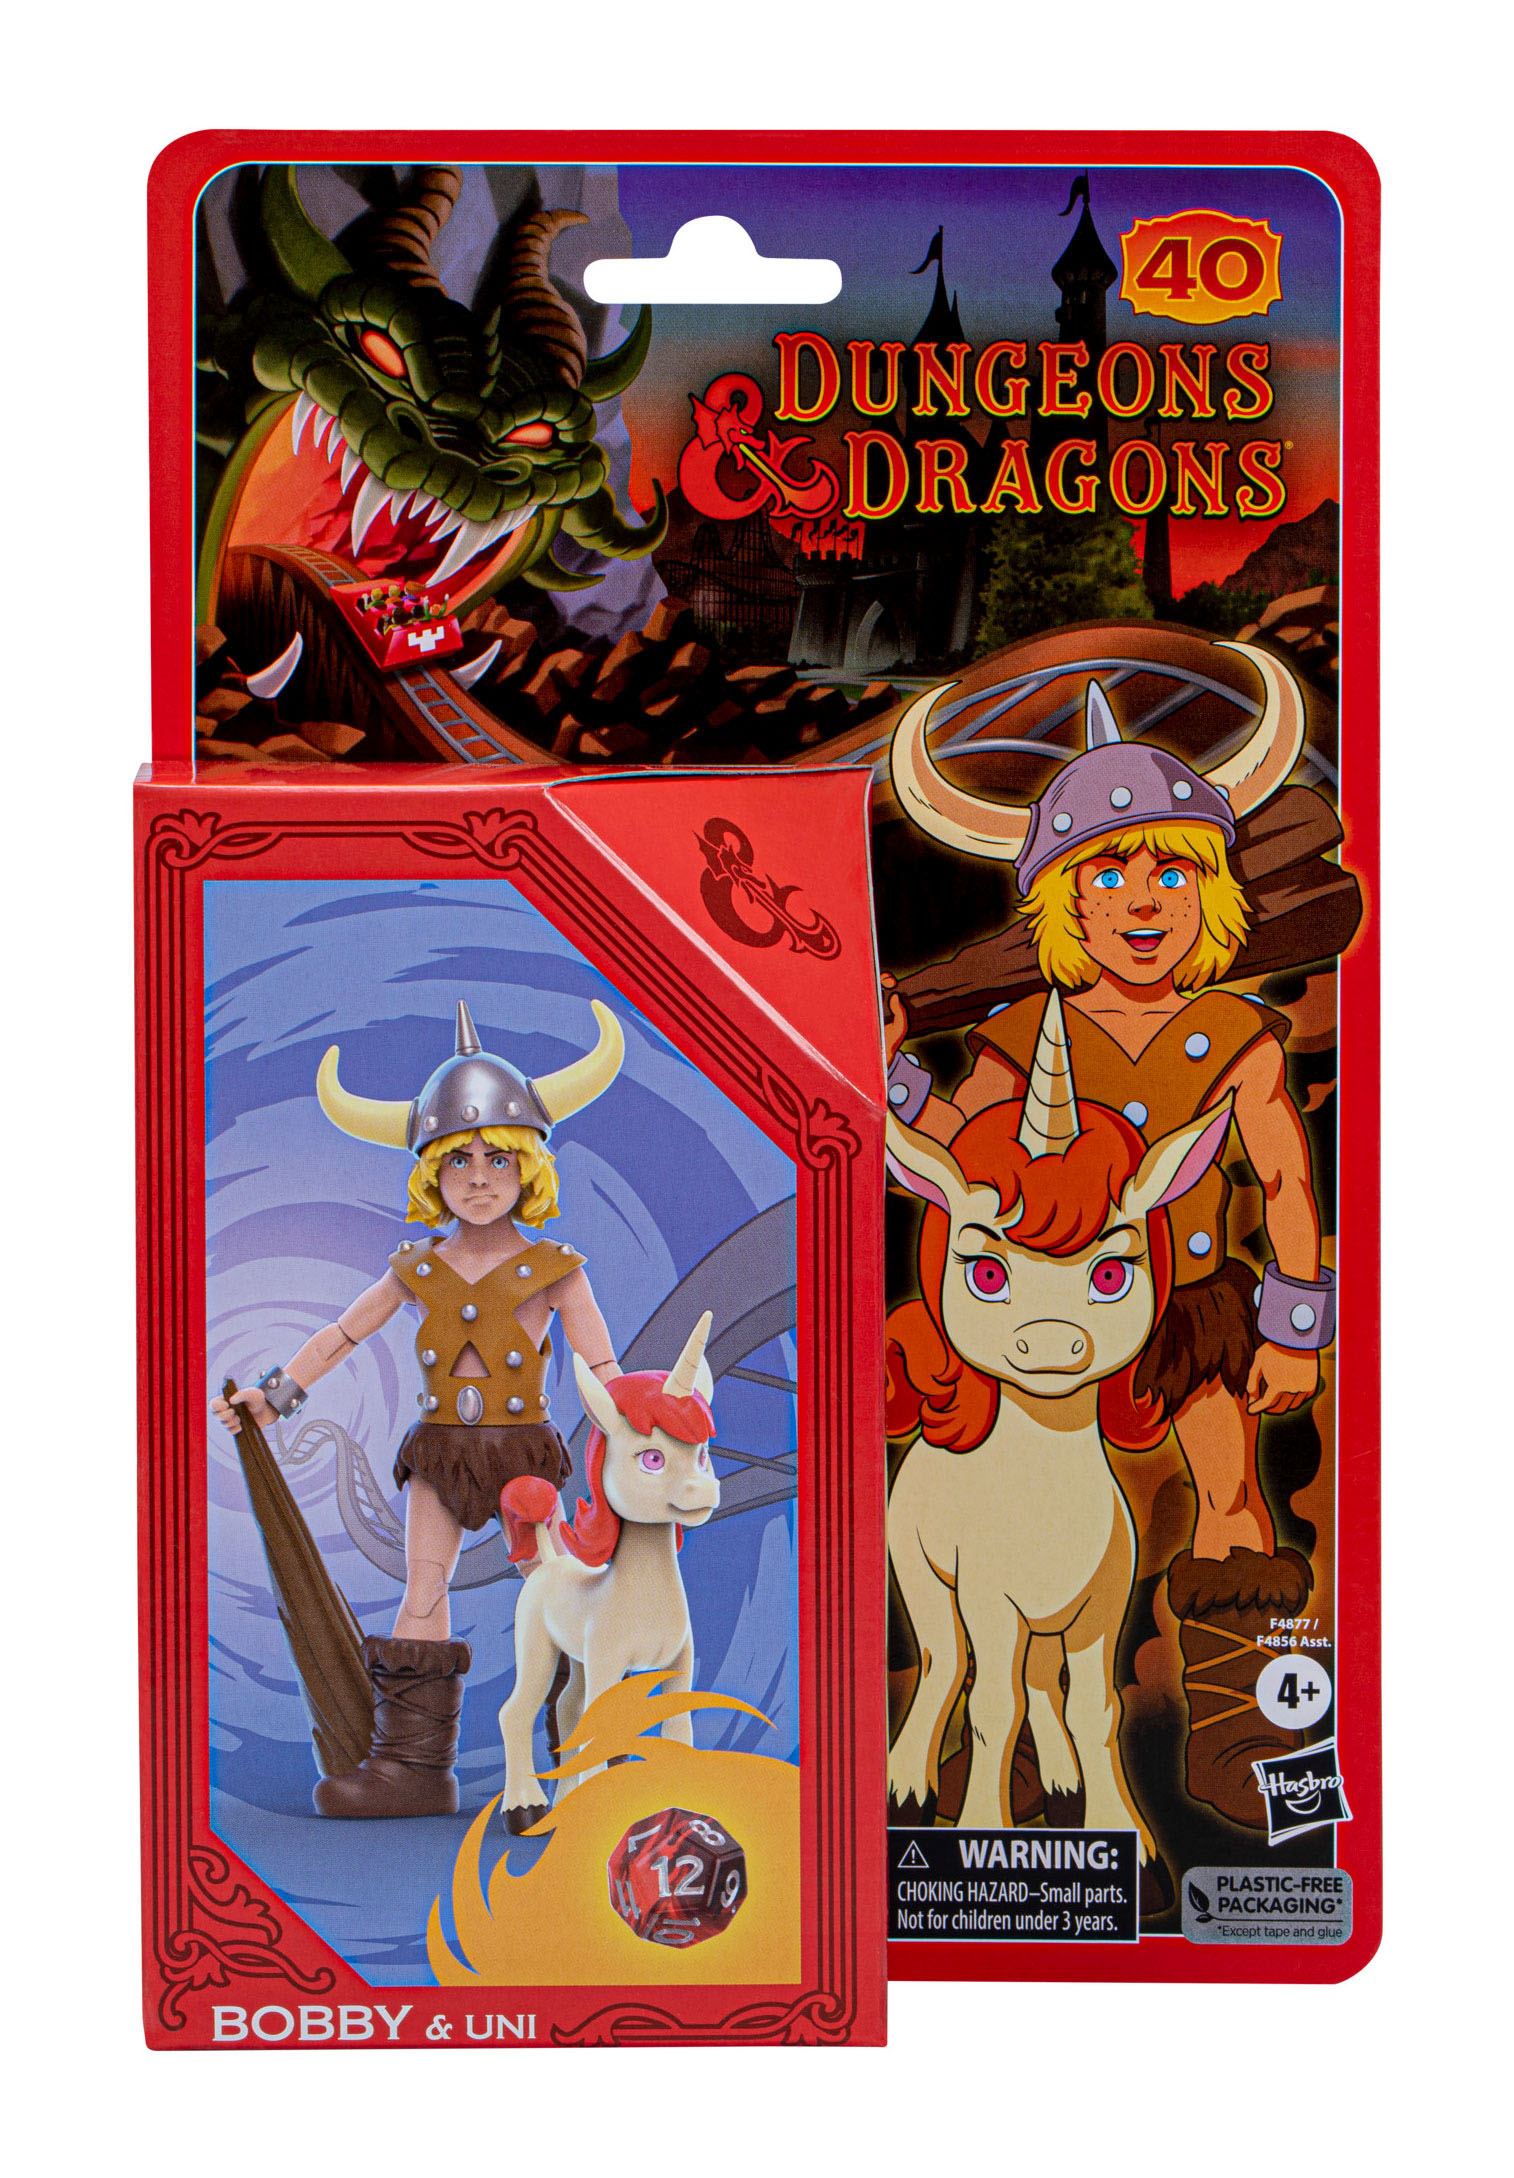 Dungeons & Dragons (Im Land der fantastischen Drachen) Actionfiguren Bobby & Uni 15 cm HASF4877 5010994192594